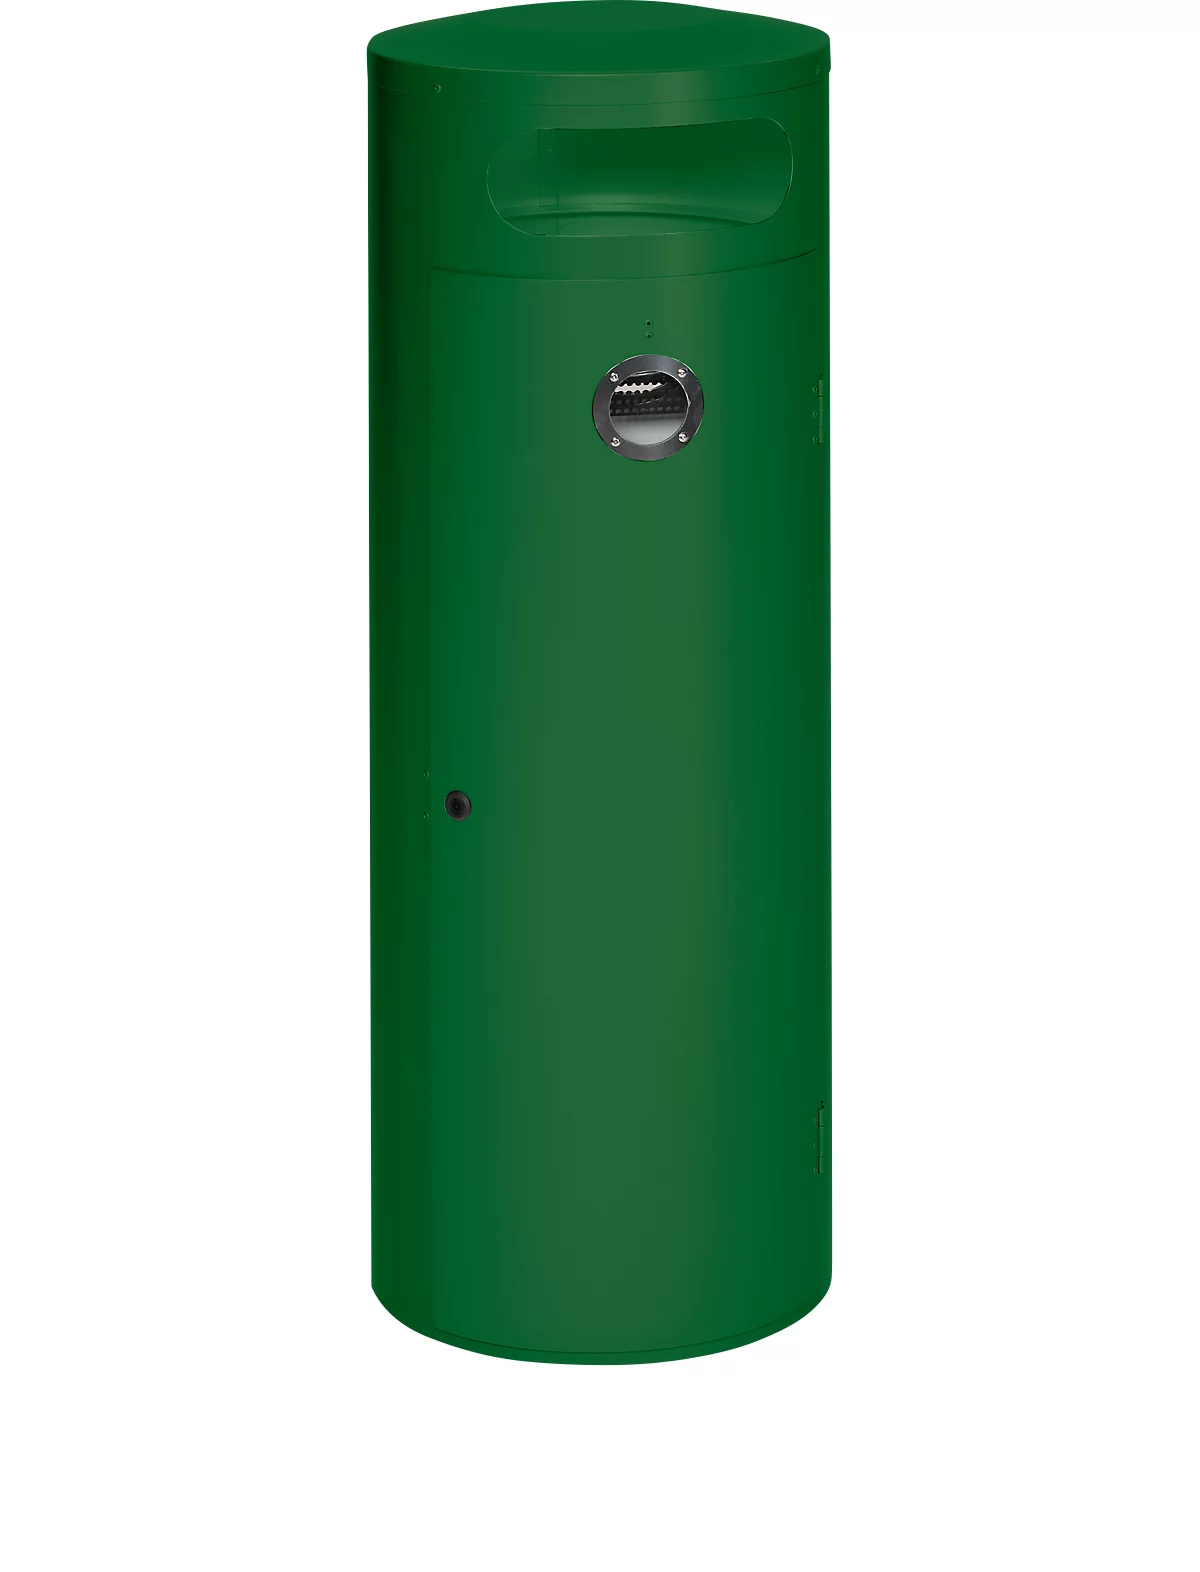 Colector de residuos KS 90, con cenicero interior, verde musgo